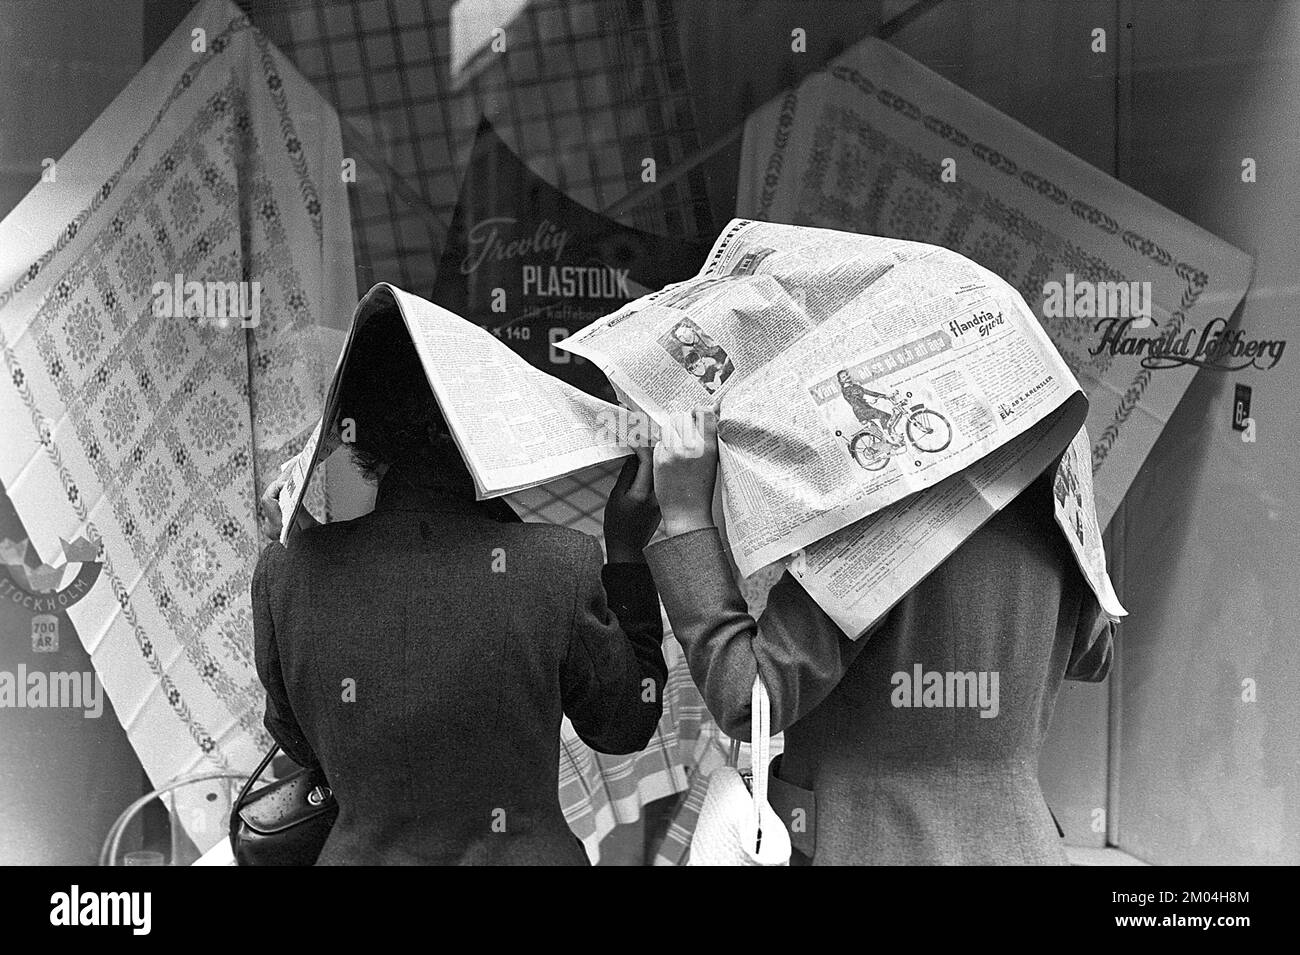 Regenschirme in den 1950er Jahren. Der Regen strömt in Strömen und zwei Damen halten die Tageszeitungen über sich, da sie keinen Schirm haben. Es ist ein Regentag in Stockholm Schweden 1953. ref. 1,2 Stockfoto